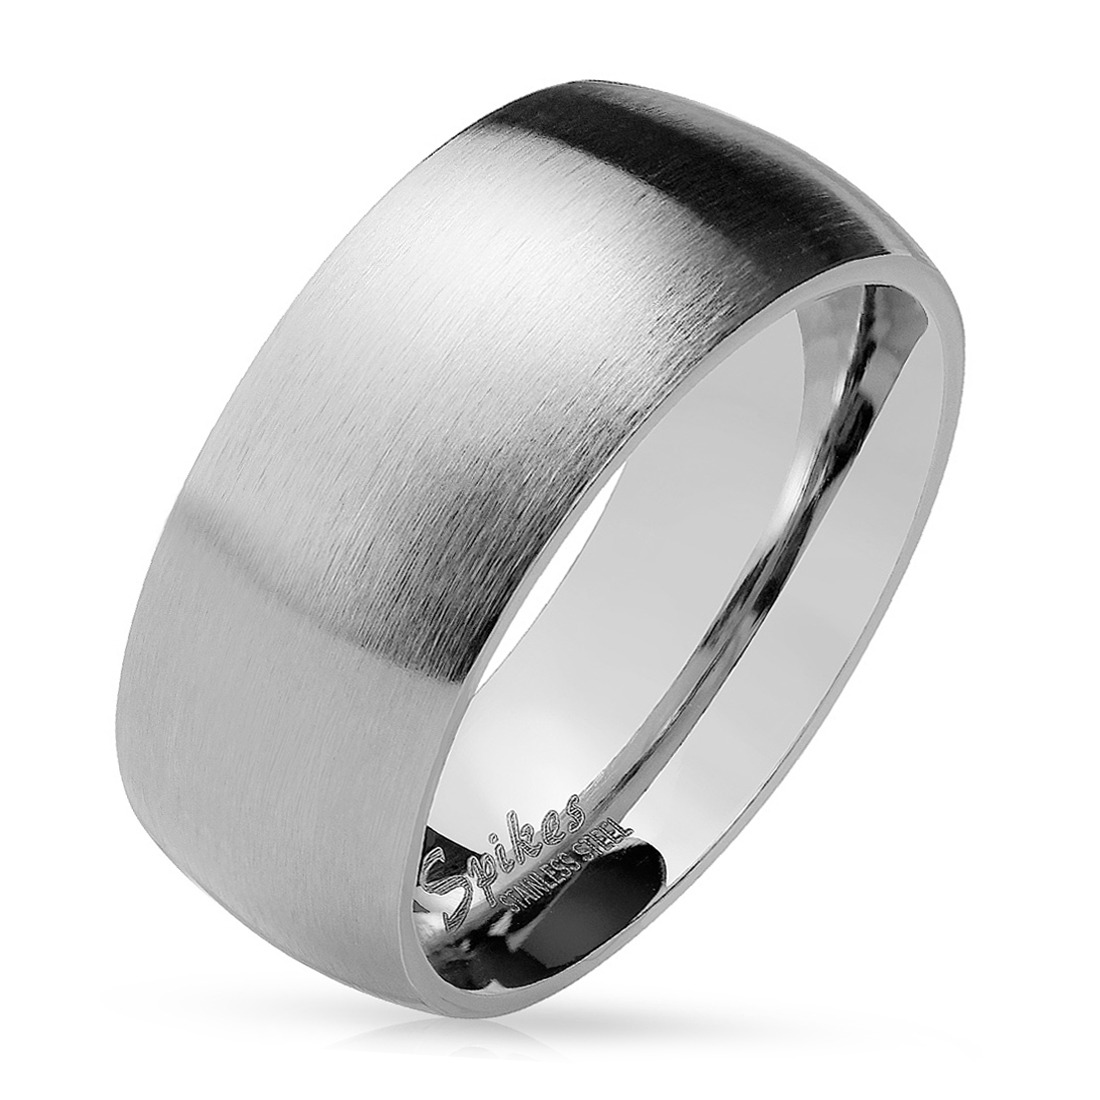 Šperky4U OPR0028 Ocelový prsten matný, šíře 8 mm - velikost 67 - OPR0028-8-67